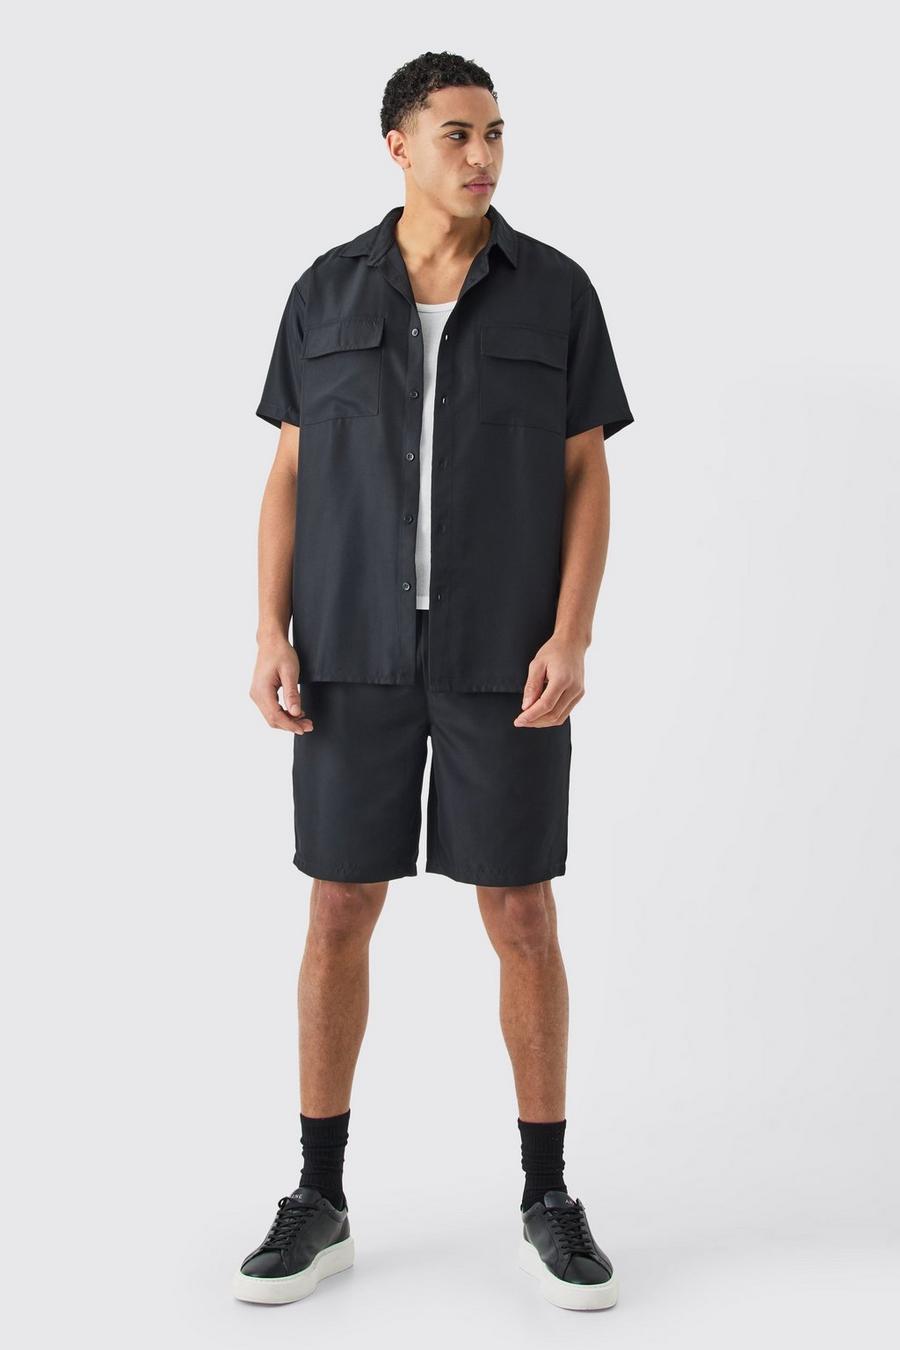 Black Short Sleeve Soft Twill Overshirt And Short Set 